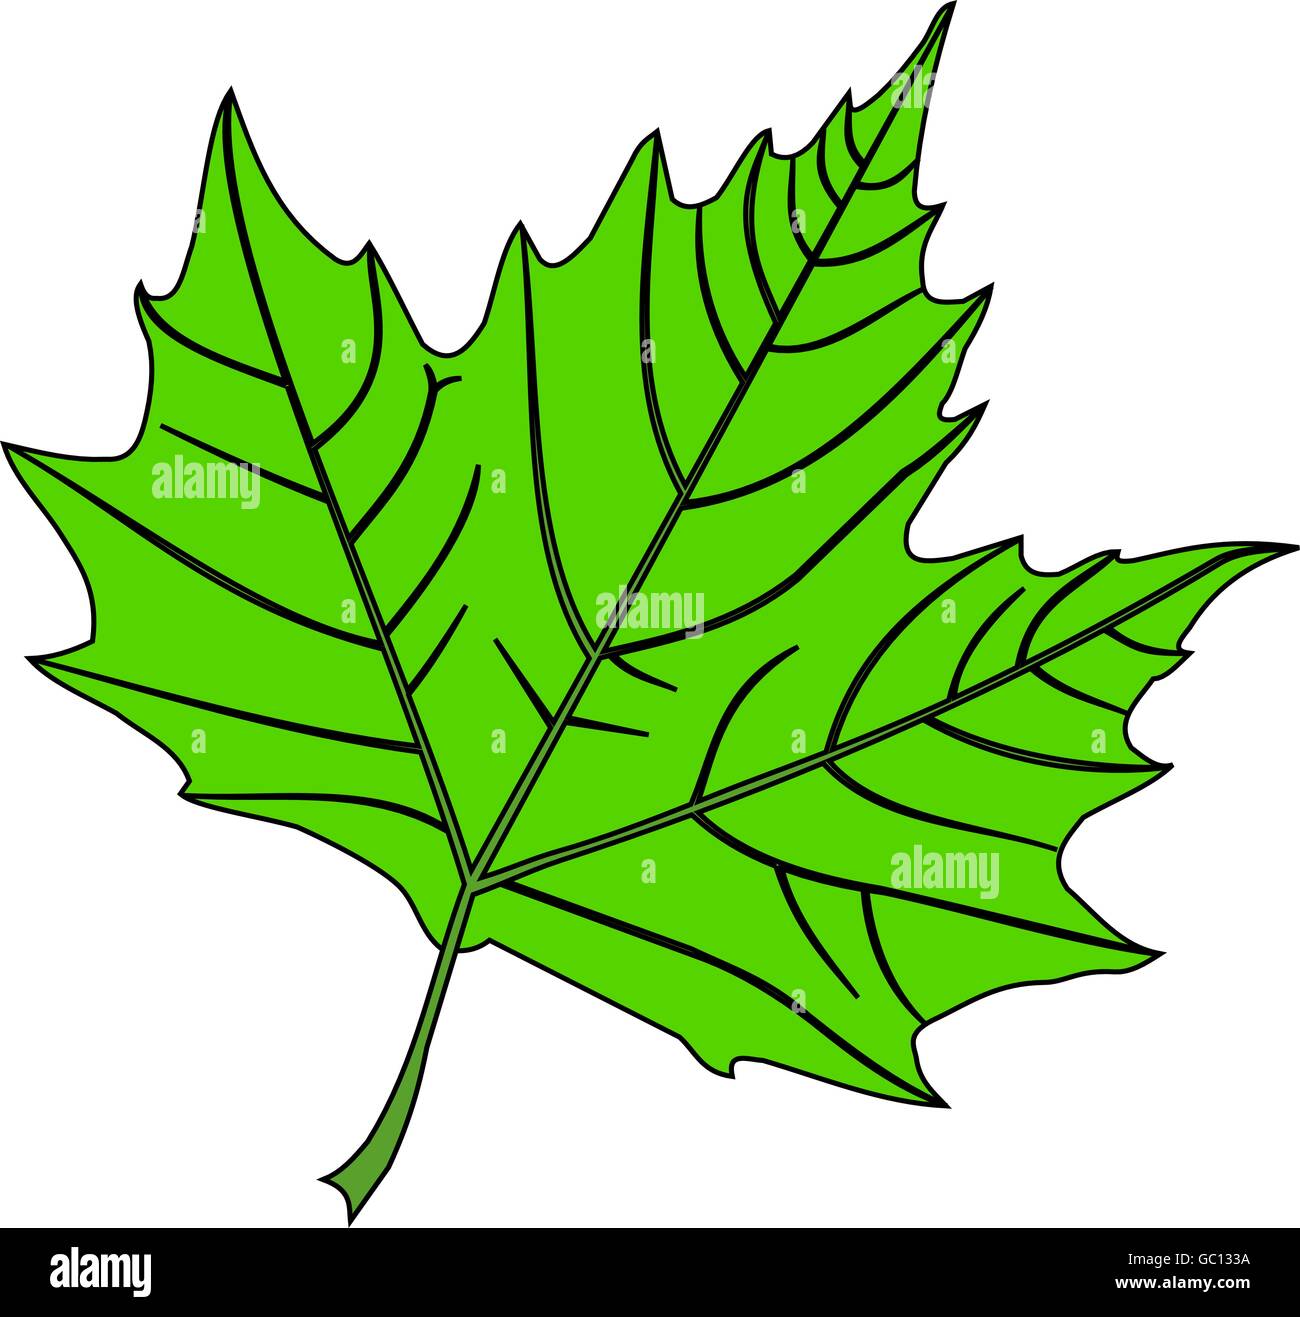 Ahorn,(Platanus acerifolia), Vektor, isolierte Ahorn Blatt, Stock Vektor